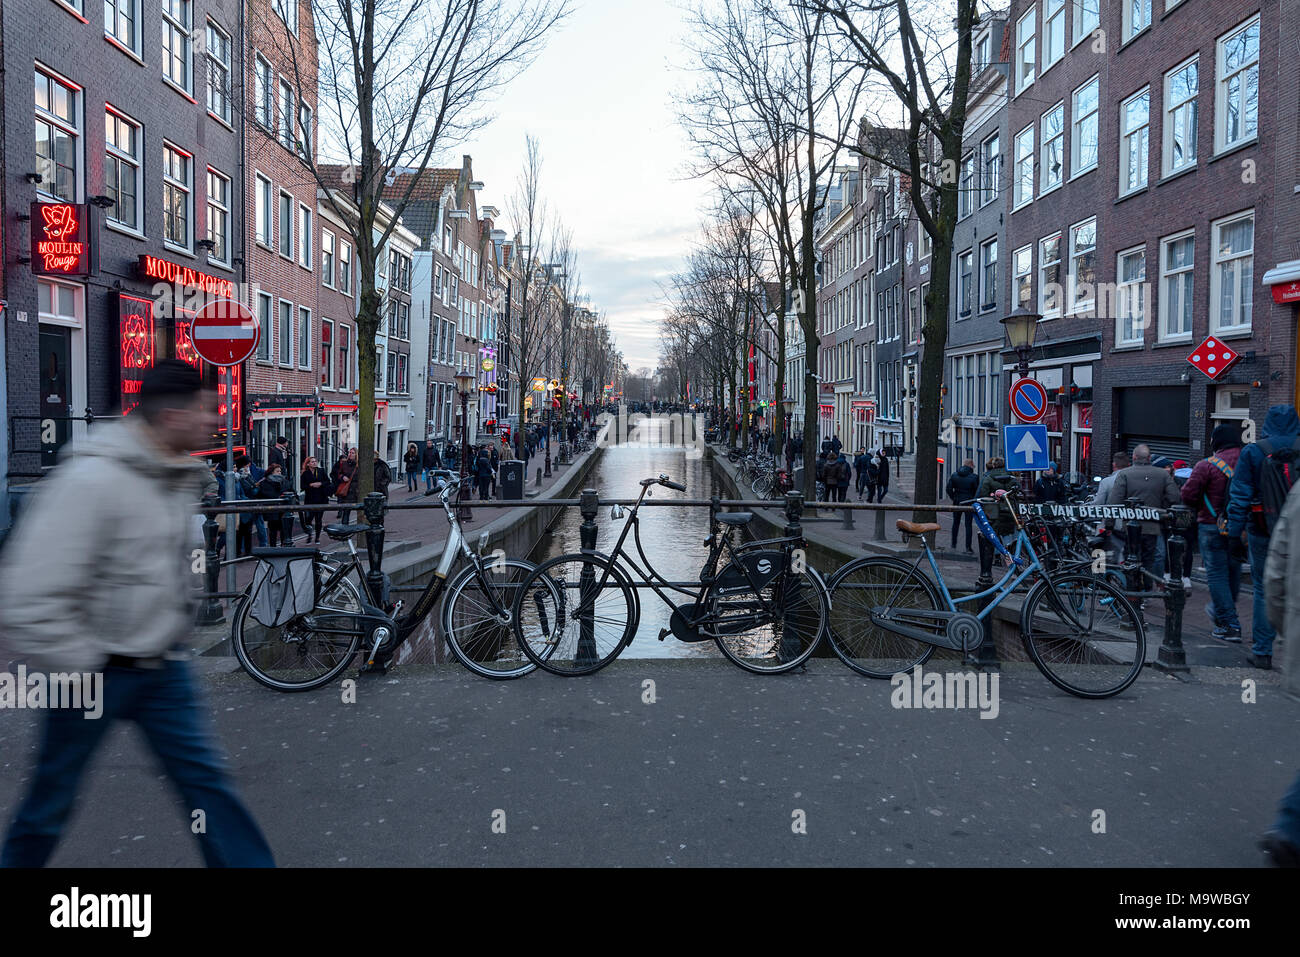 Giorno Orario visualizza in basso Oudezijds Achterburgwal canal street nel famoso quartiere a luci rosse di Amsterdam, Paesi Bassi. Foto Stock